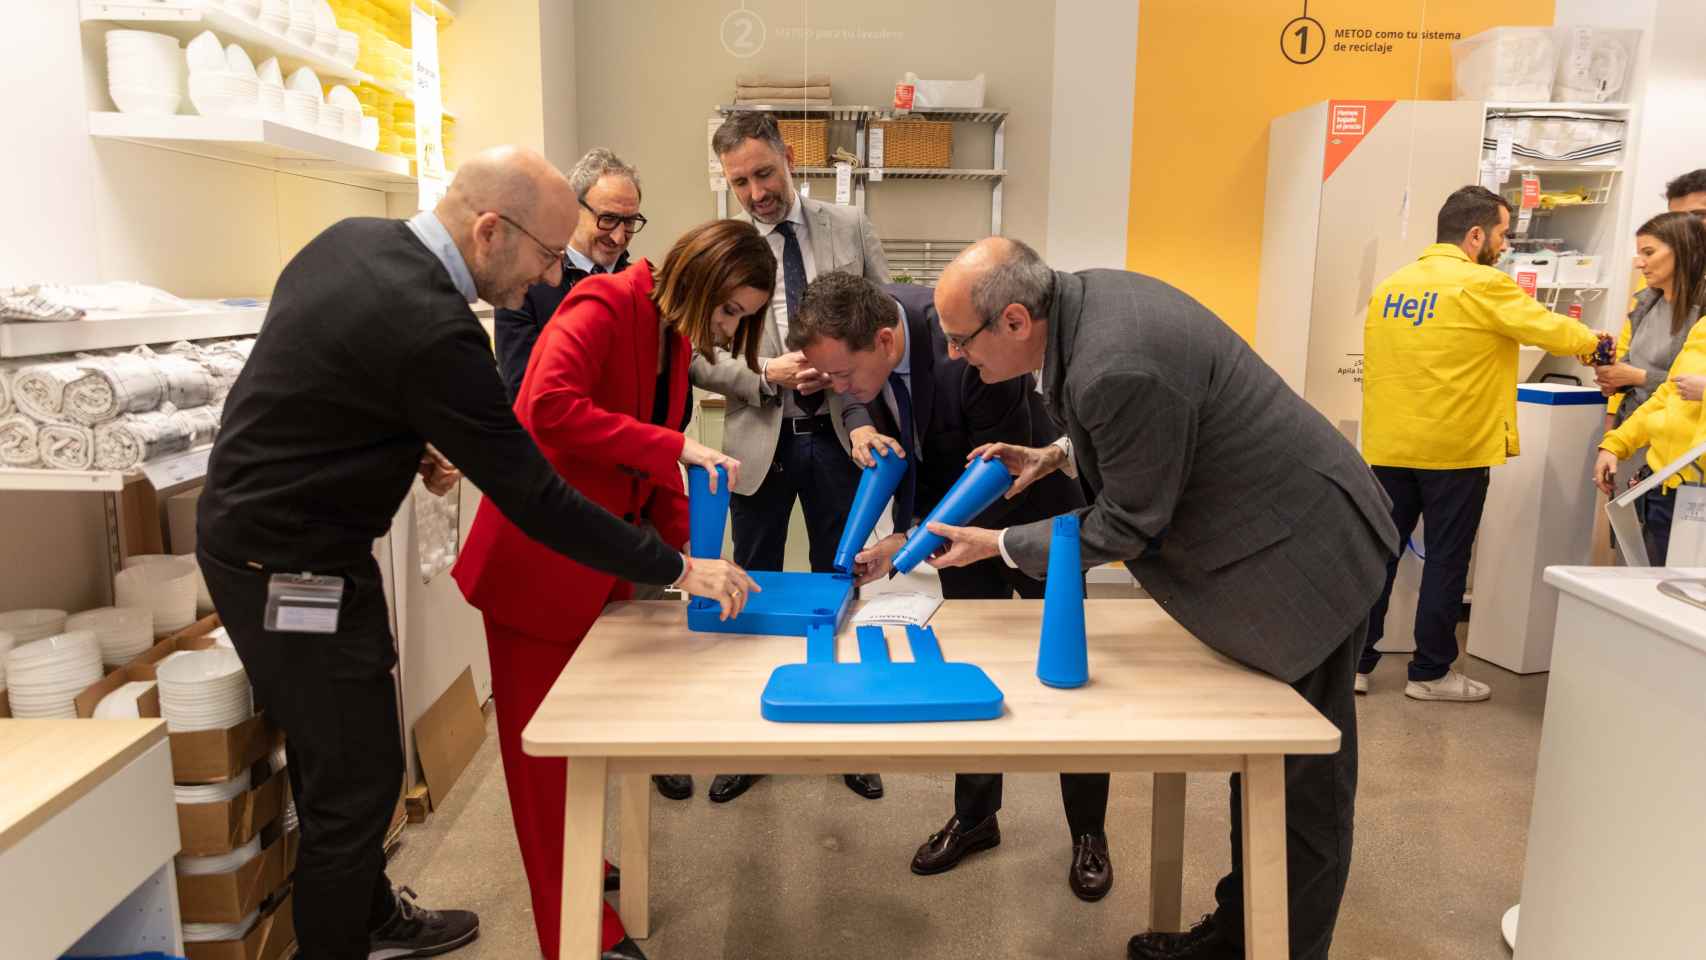 Ikea inaugura su nueva tienda en Toledo y pone al alcalde a montar muebles: todas las fotos